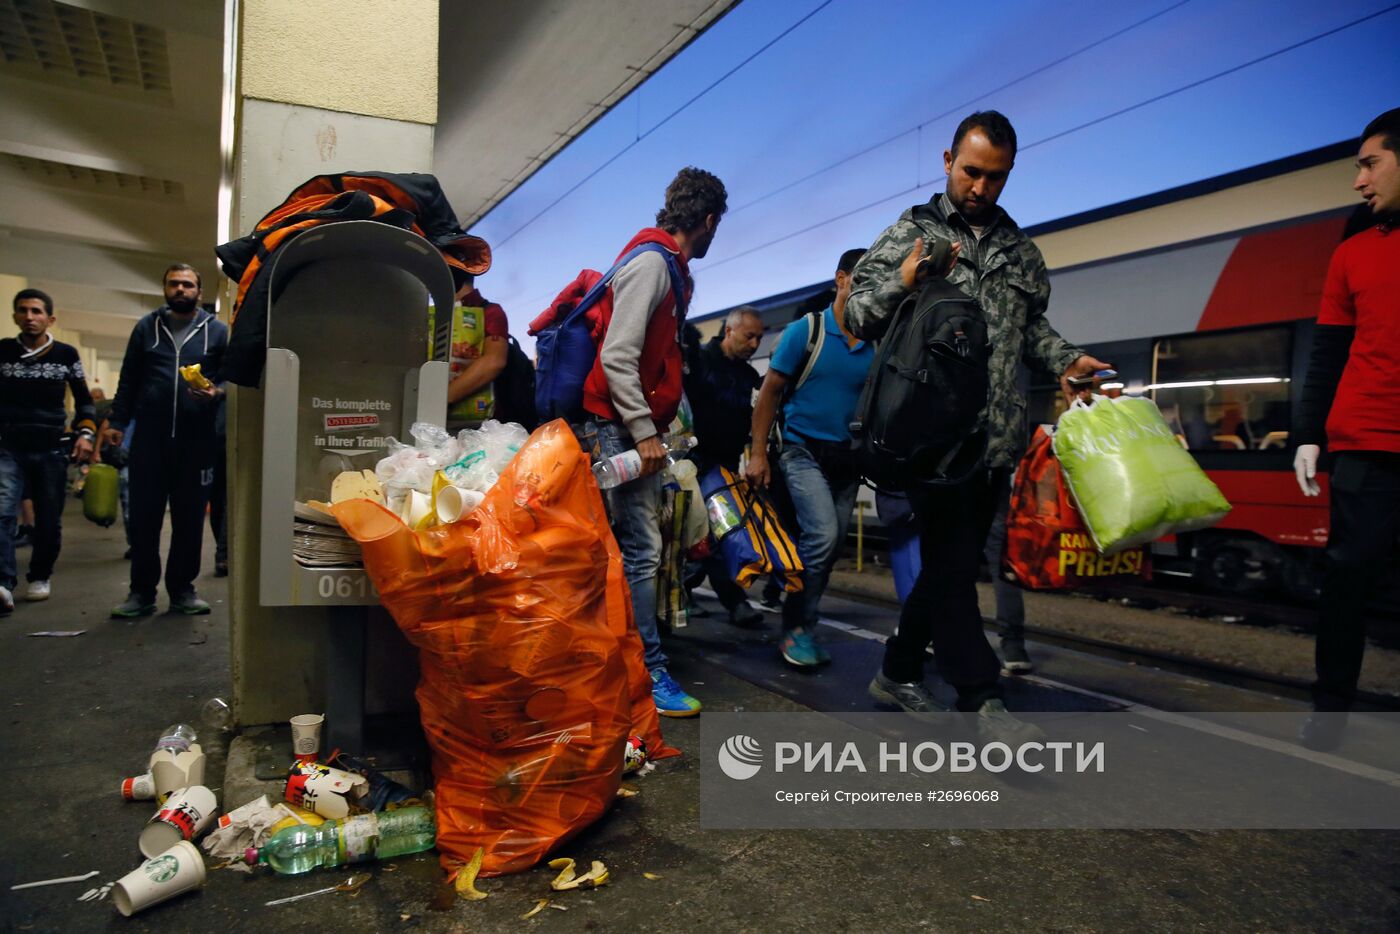 Беженцы из стран Ближнего Востока на вокзале Вестбанхоф в Вене